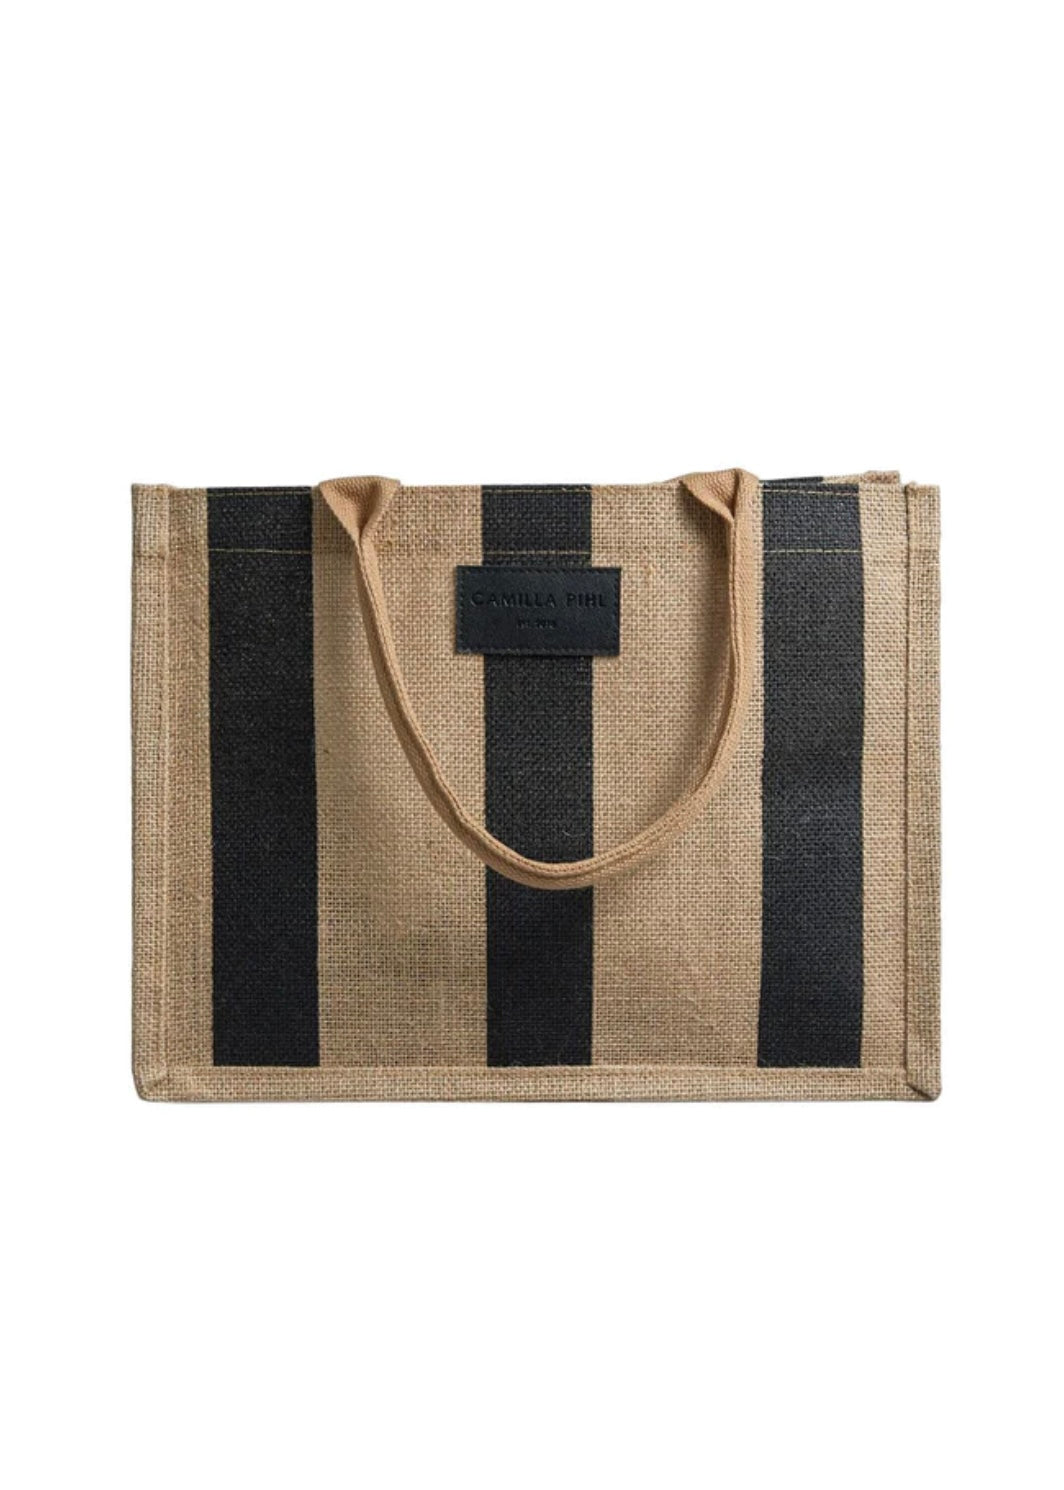 Camilla Pihl Market bag small - Black Stripe